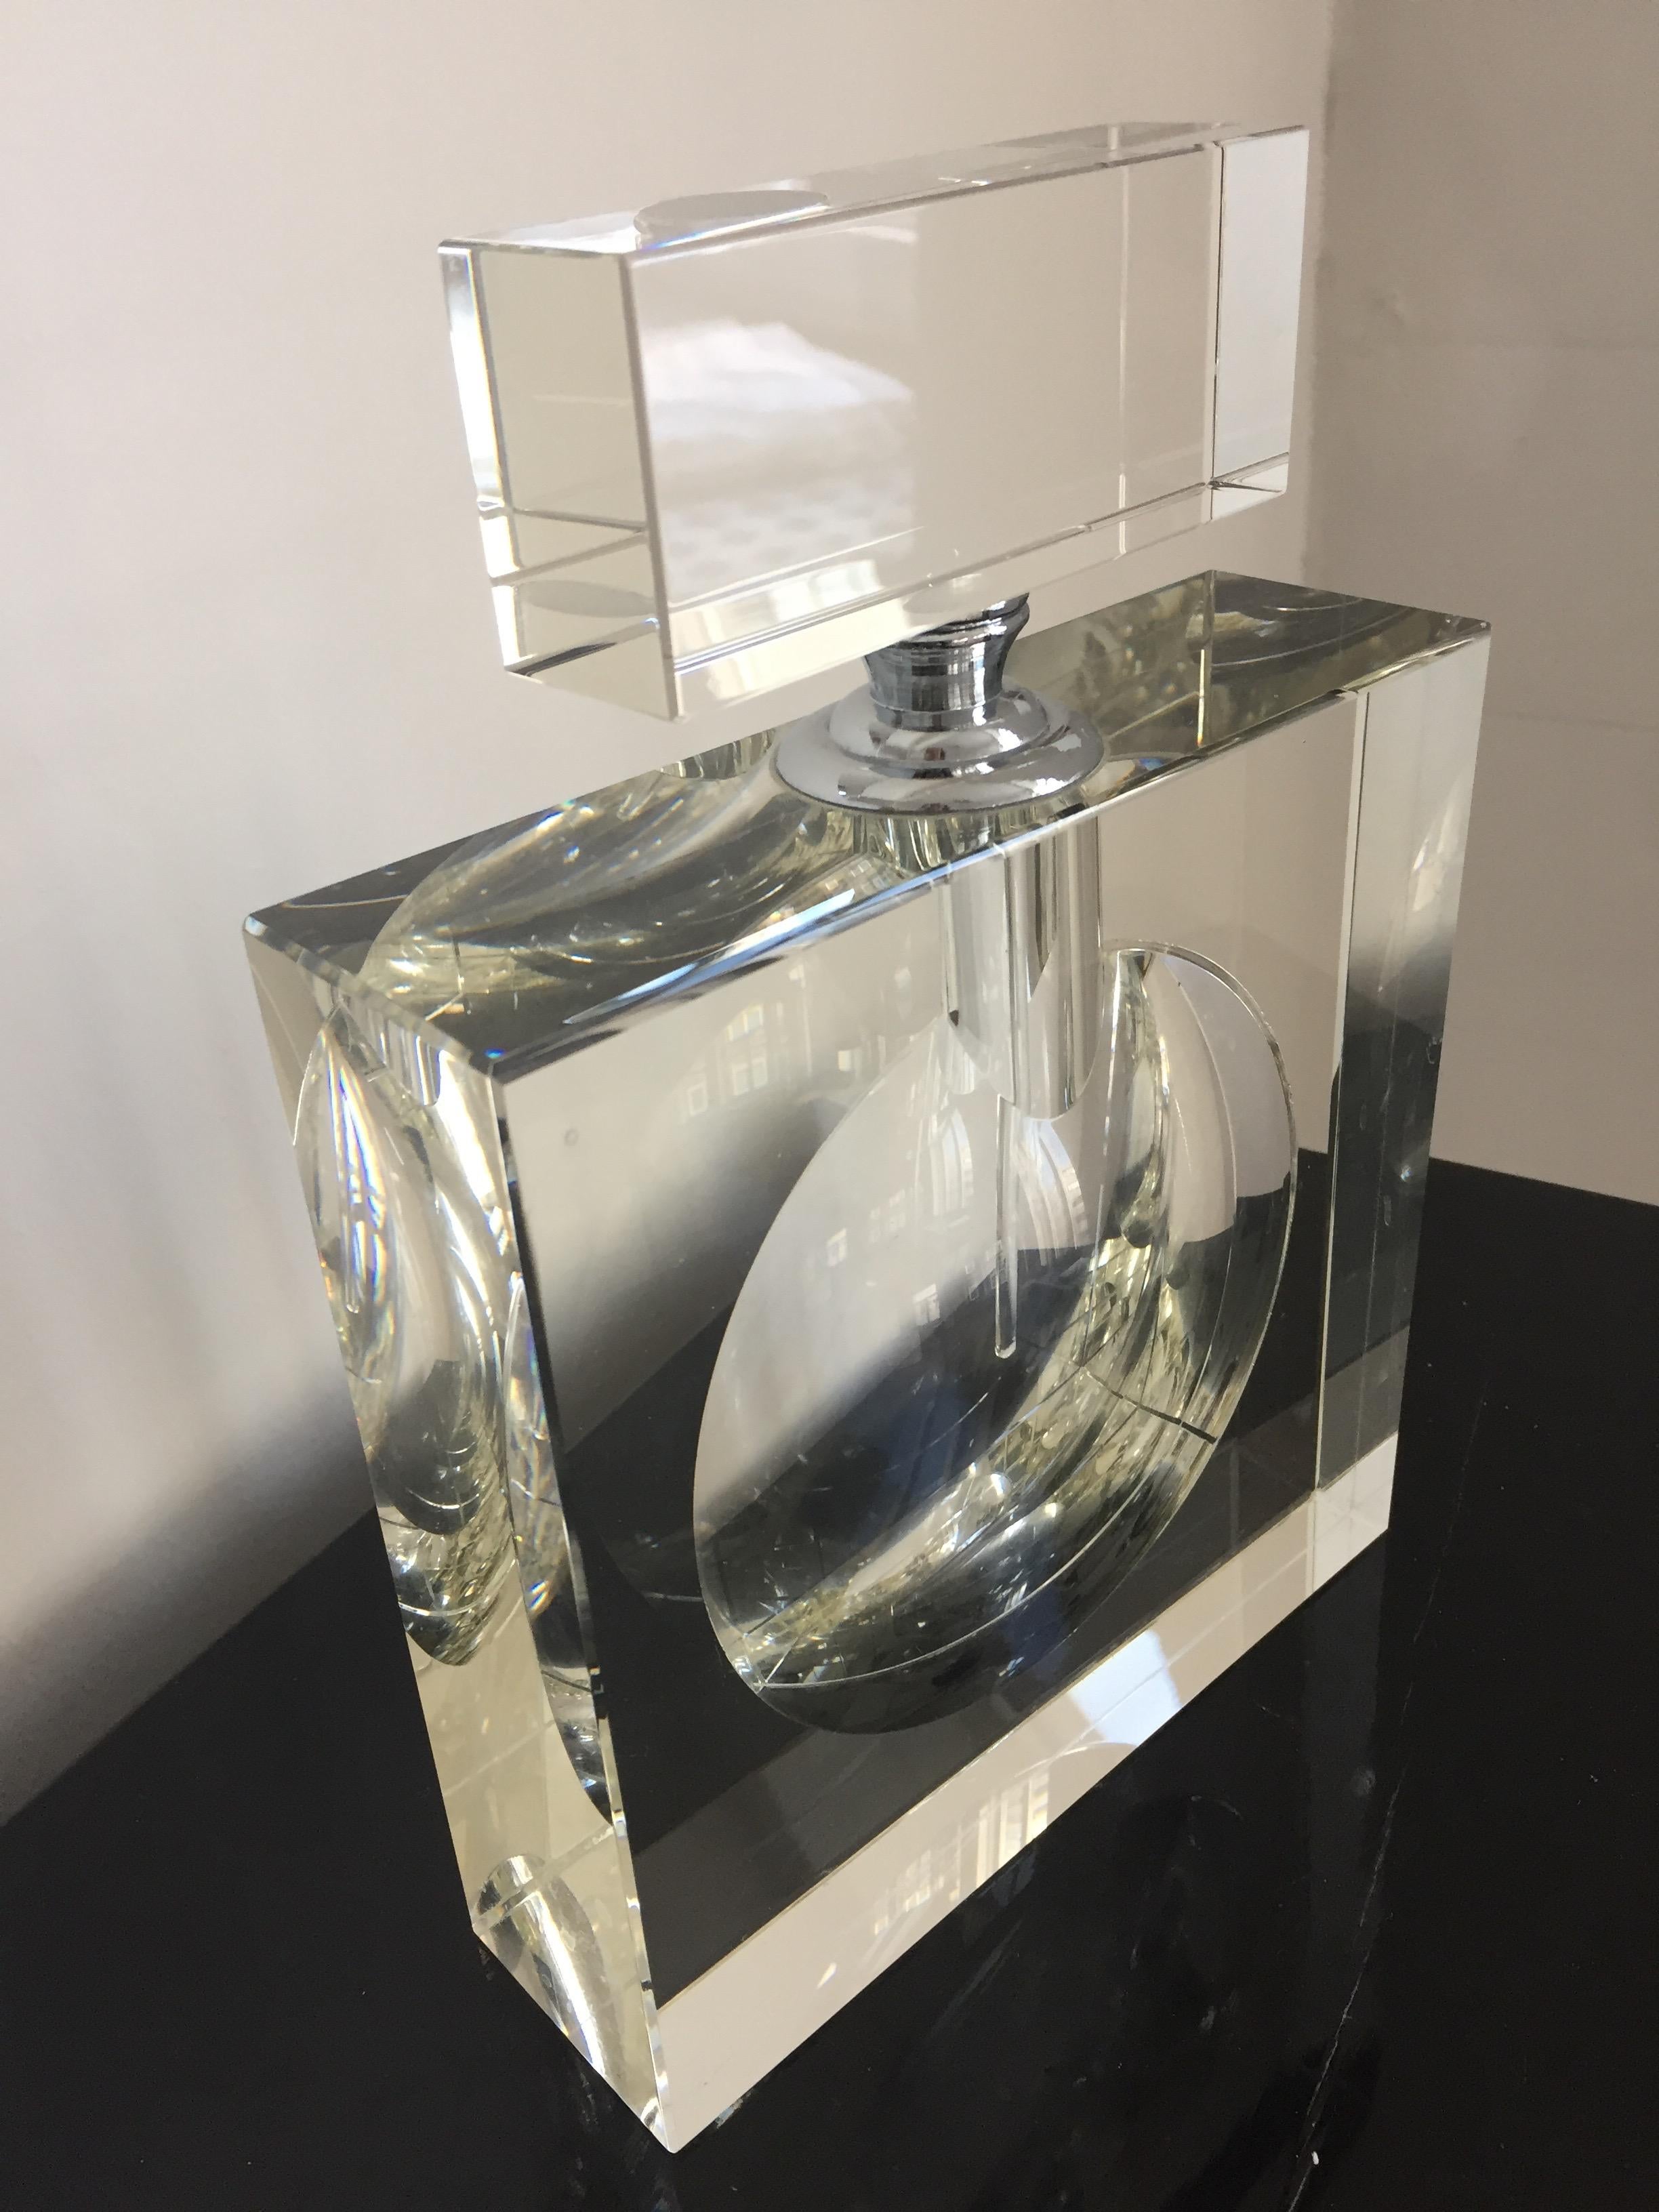 Flacon de parfum, classe cristal de Venise, design Modern dans le style de Chanel, créé en 1950, parfait état, capuchon avec détail crome,
Dimensions : 23 cm de hauteur, capuchon compris, 16 cm de largeur et 4,8 cm de profondeur.